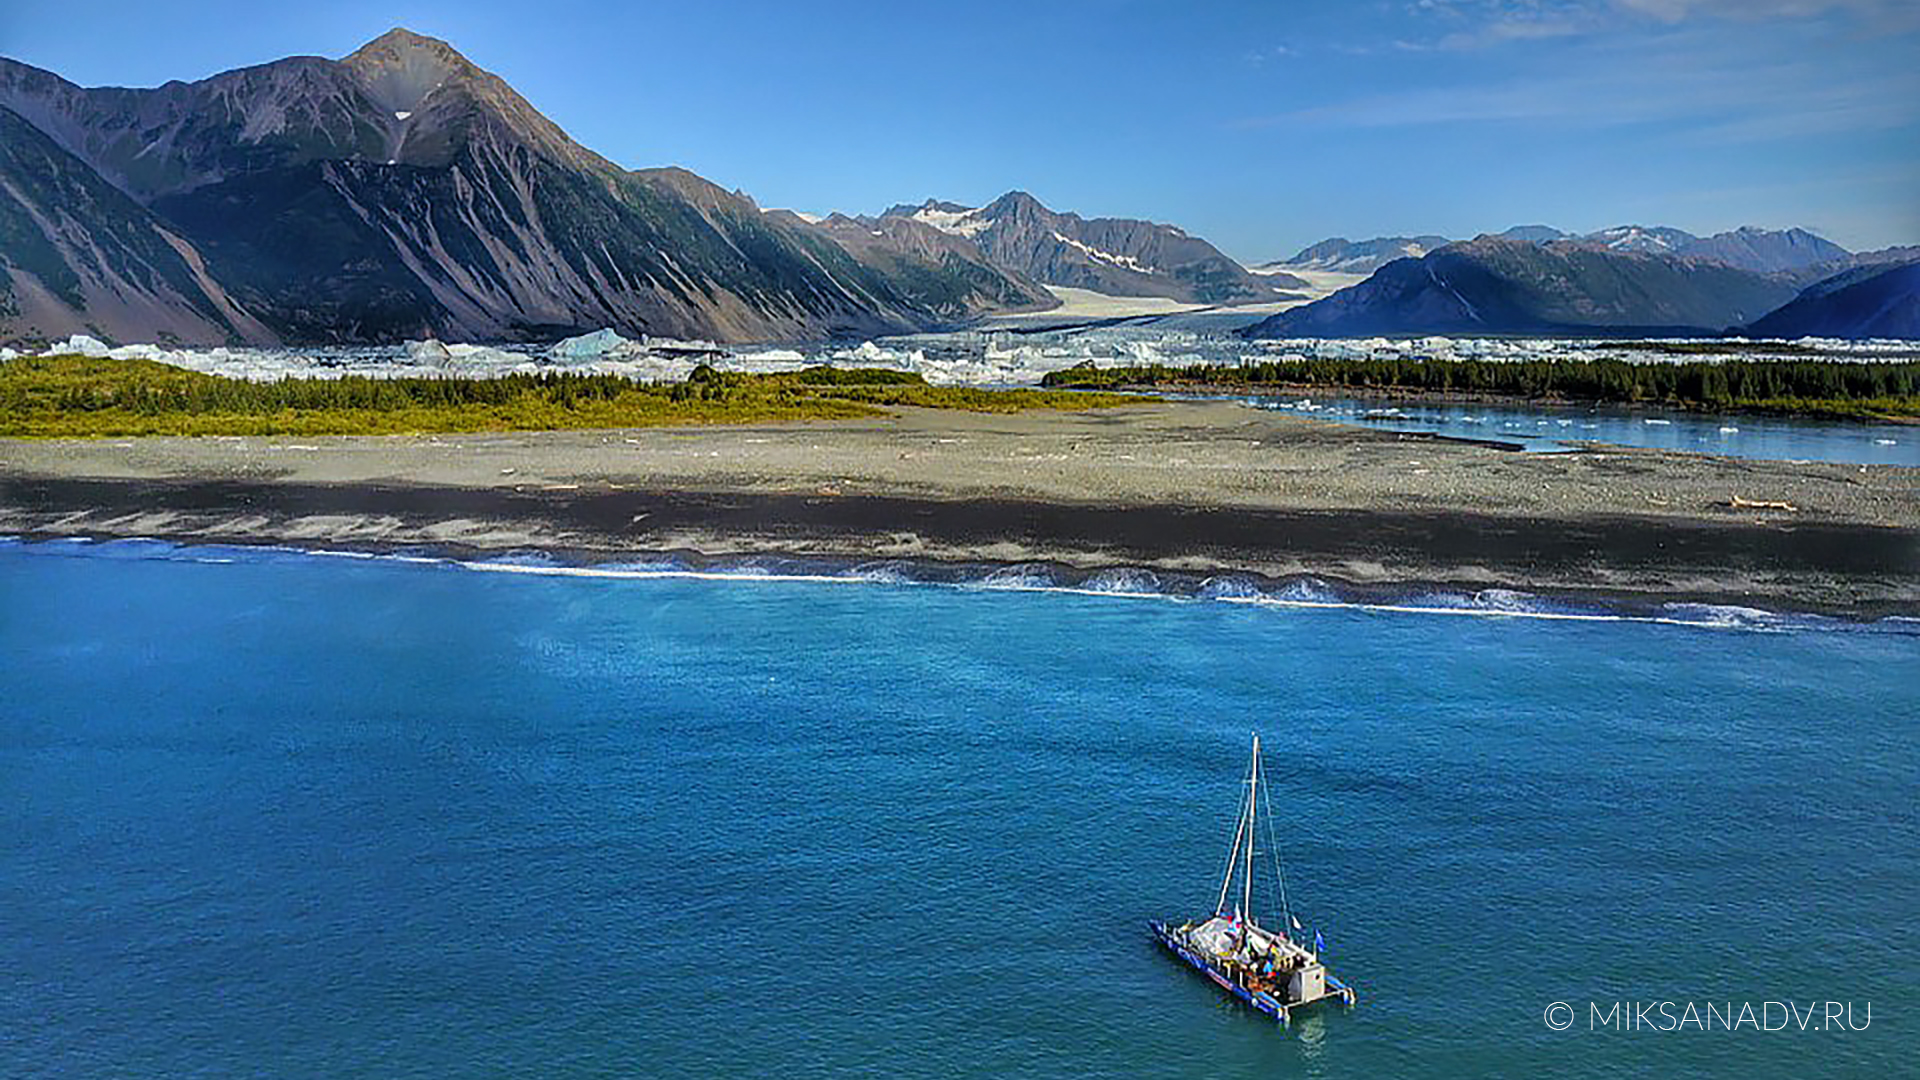 Америка. Экспедиция «Байкал — Аляска 2019»